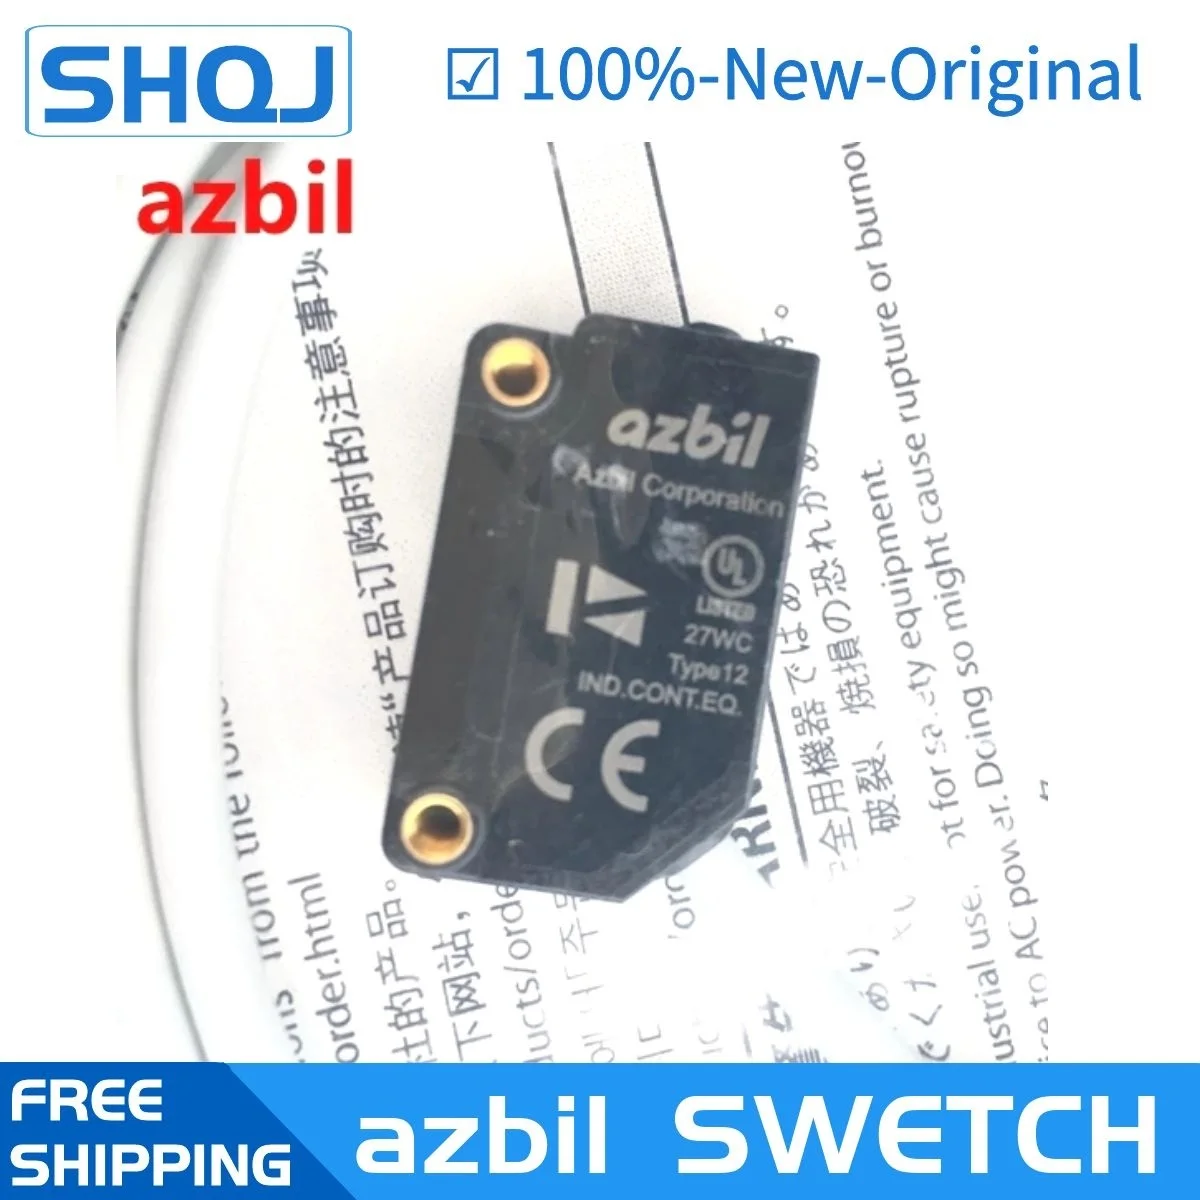 Azbil switch HP300-D1,HP7-D23 HP7-A43 HP7-A13 HP7-P11 HP7-P12 HP7-T11 HP7-T12 HP7-T21 HP7-A43 HP7-A44